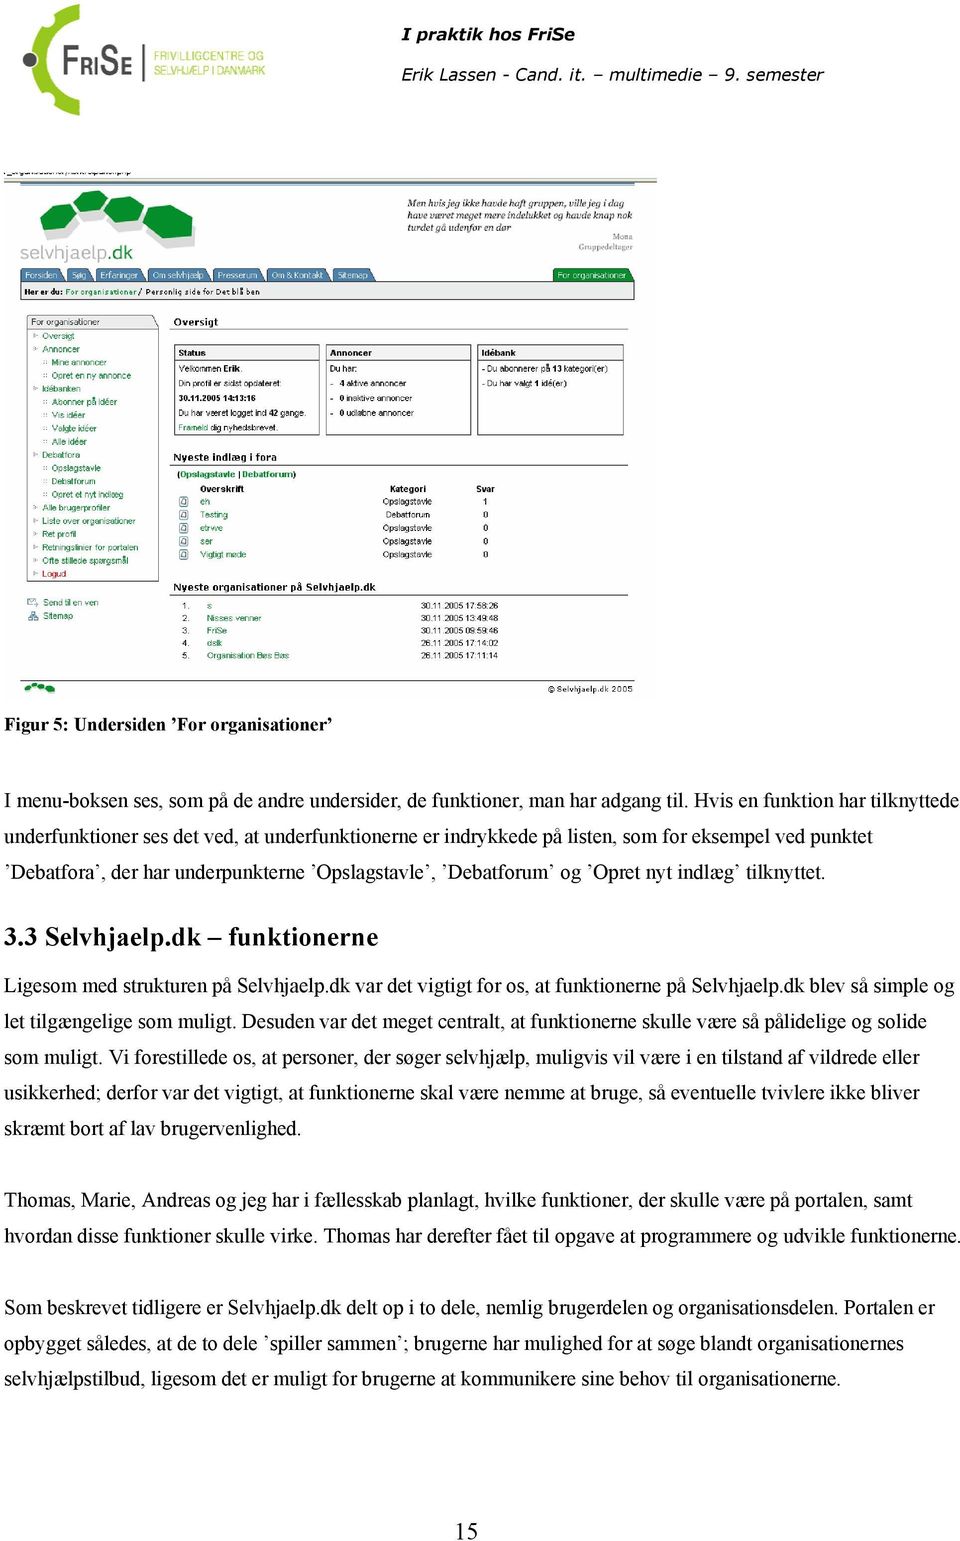 Opret nyt indlæg tilknyttet. 3.3 Selvhjaelp.dk funktionerne Ligesom med strukturen på Selvhjaelp.dk var det vigtigt for os, at funktionerne på Selvhjaelp.